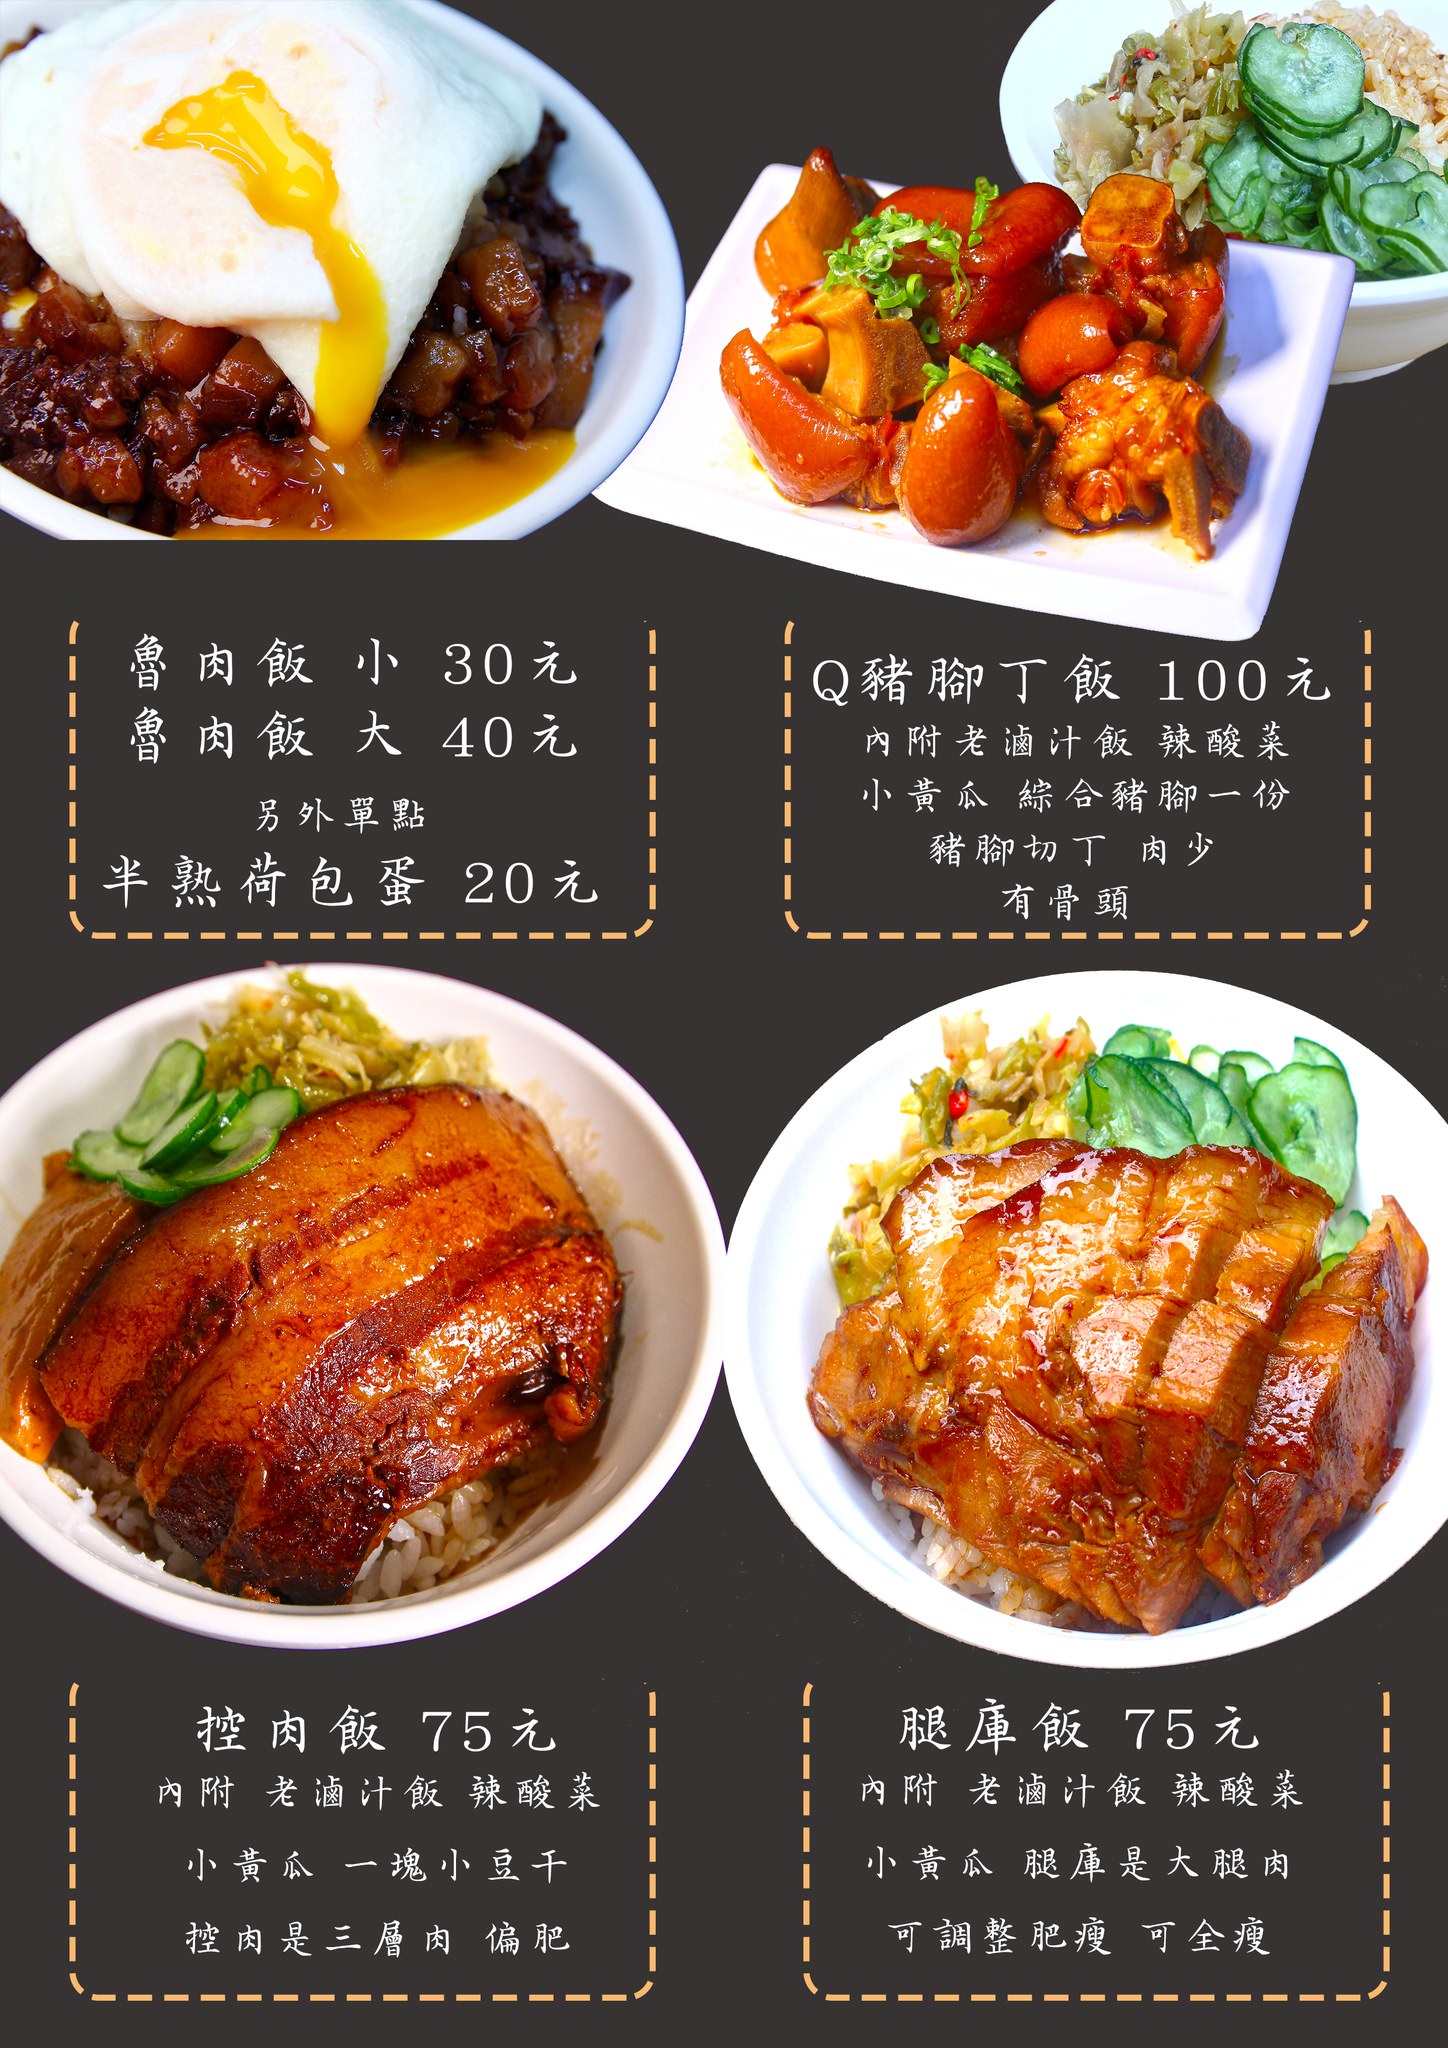 大稻埕魯肉飯menu